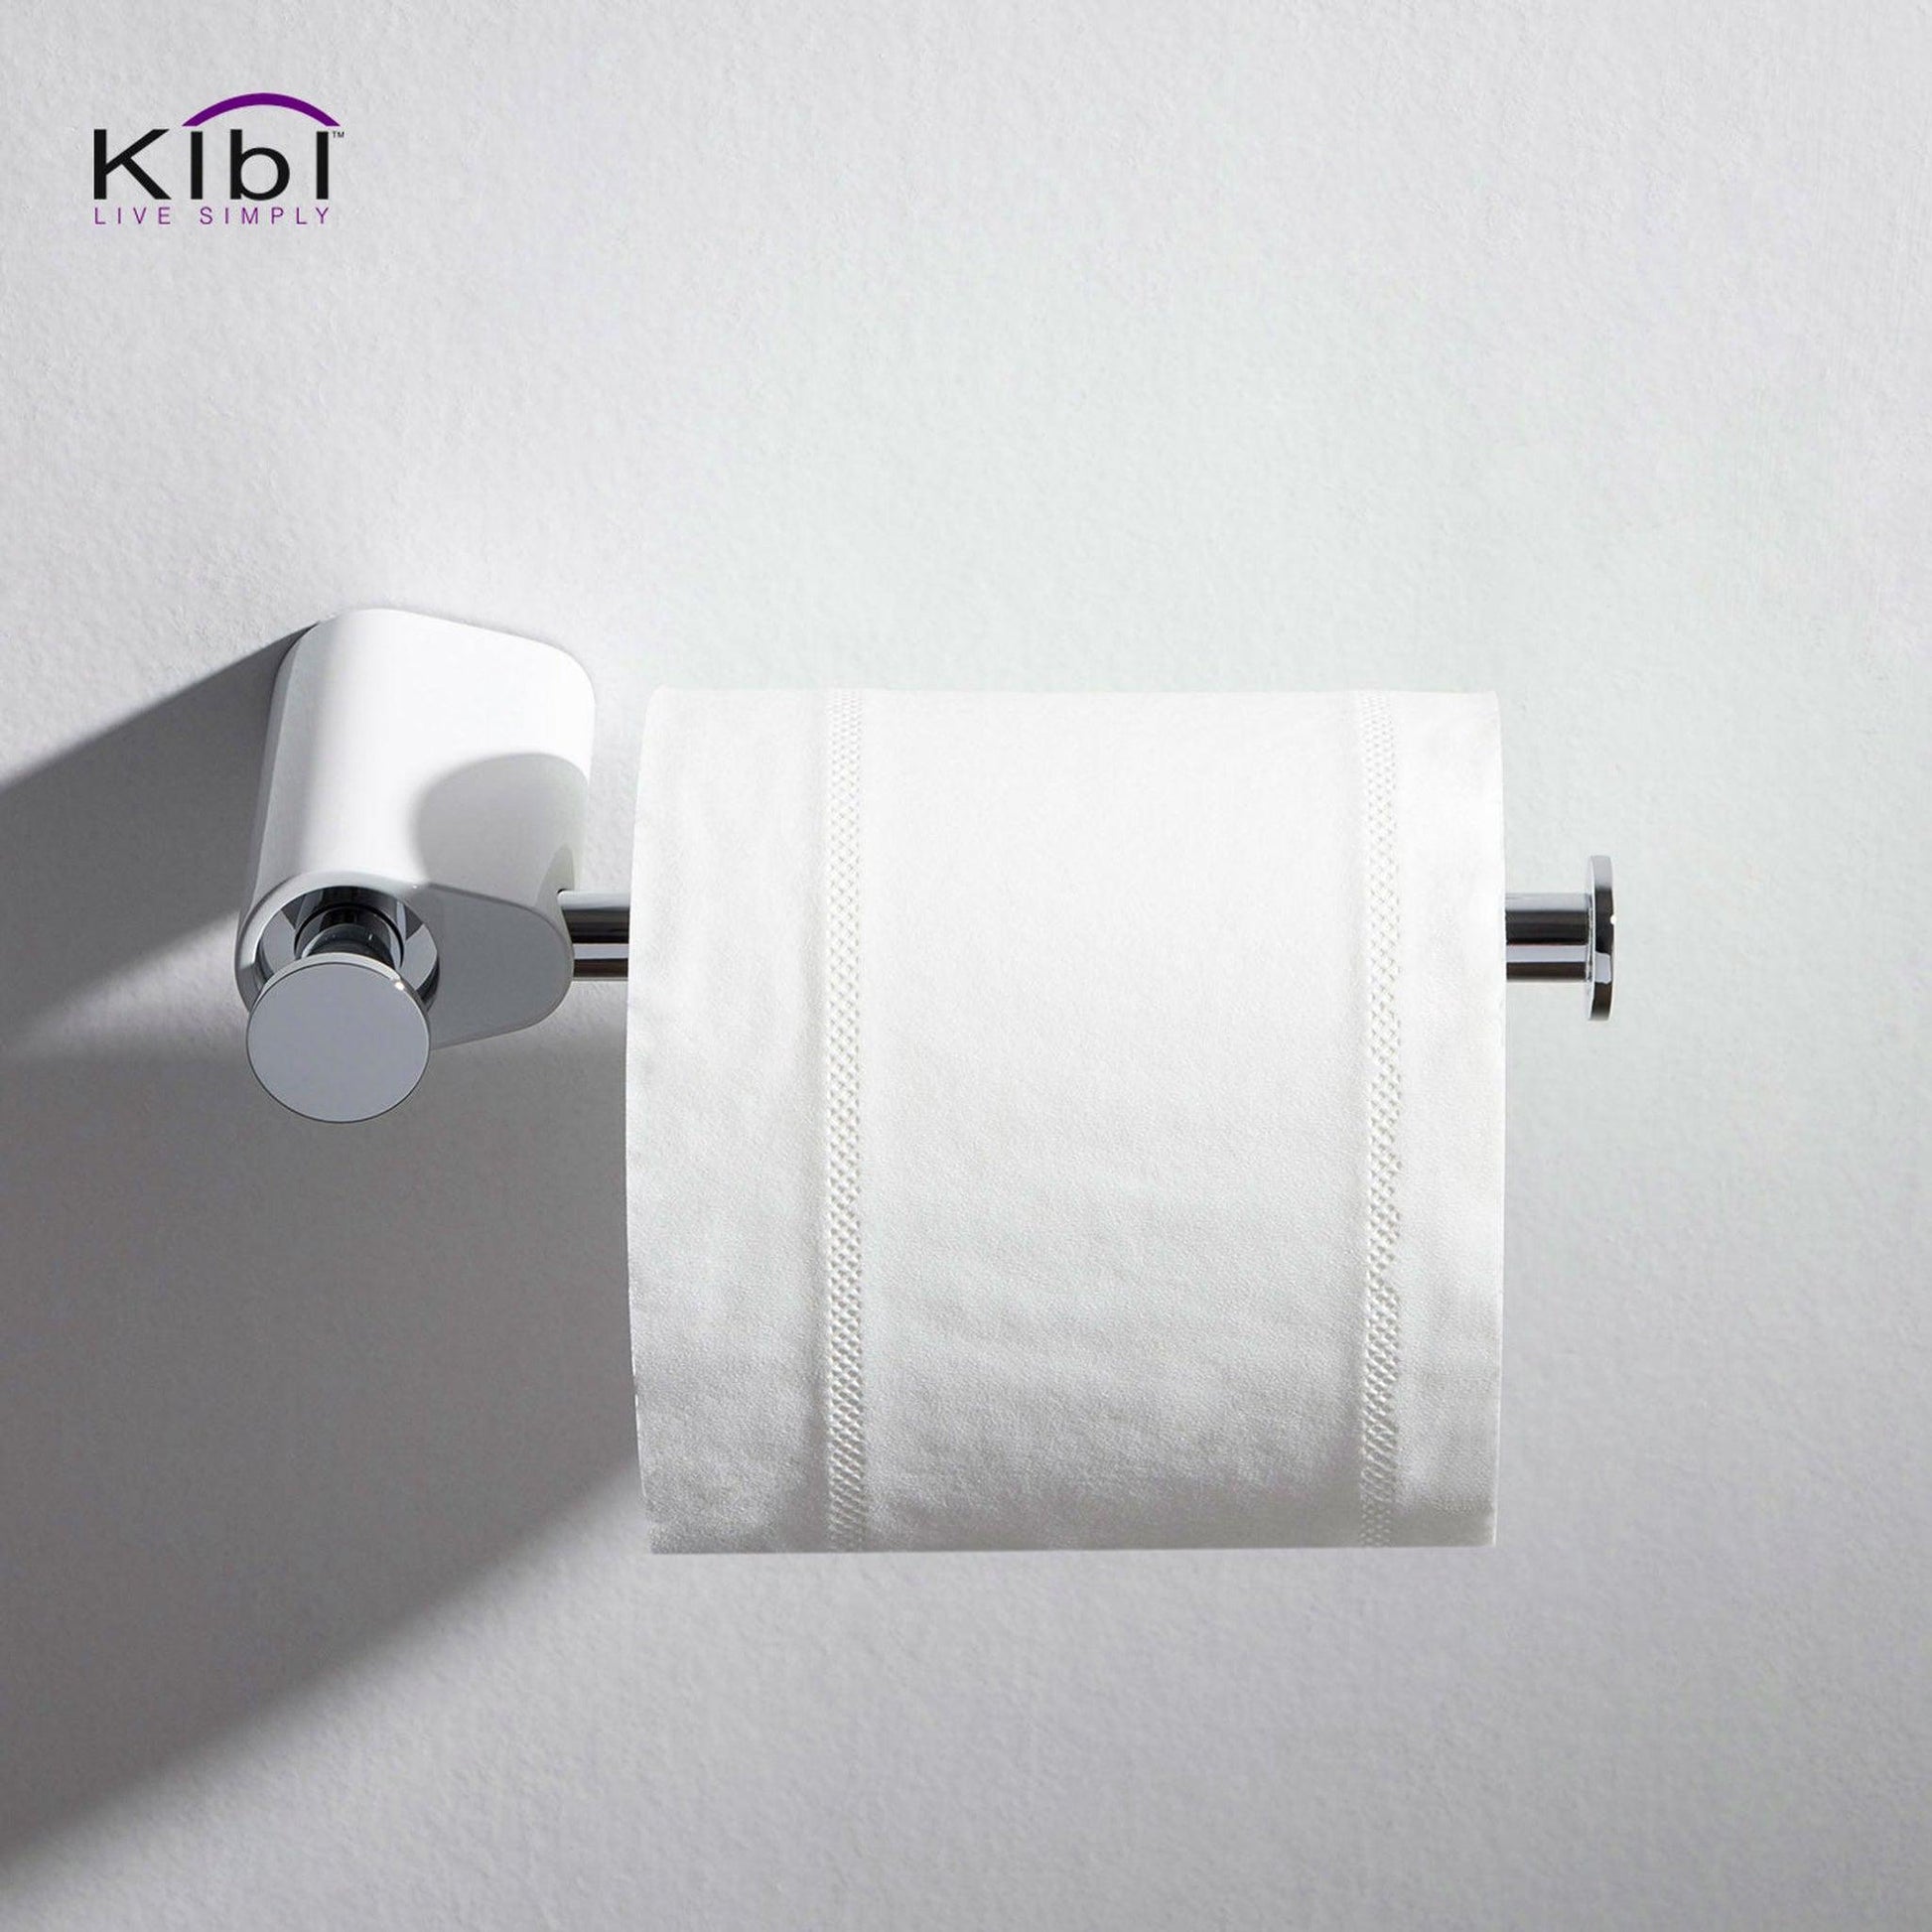 KIBI Volcano Brass Bathroom Tissue Holder in Chrome White Finish